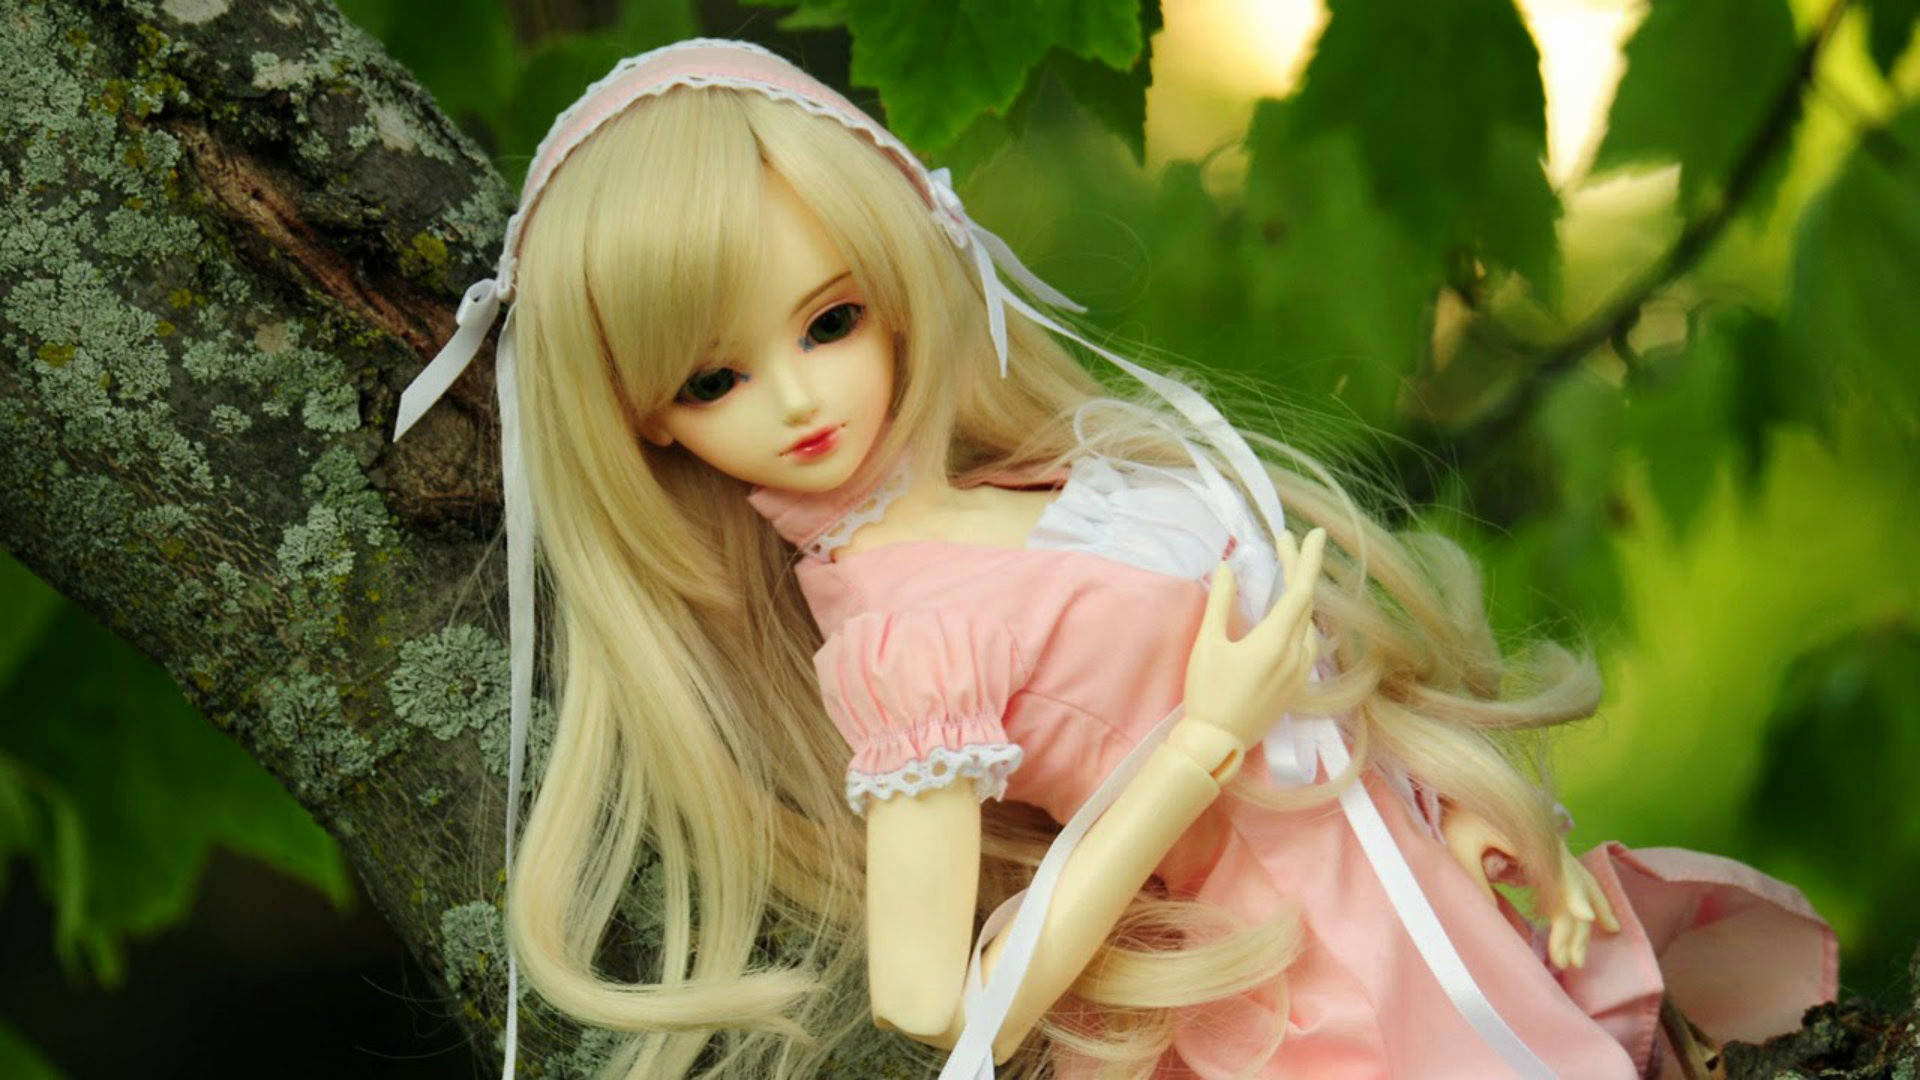 Barbie Doll Maid Lolita Dress Wallpaper